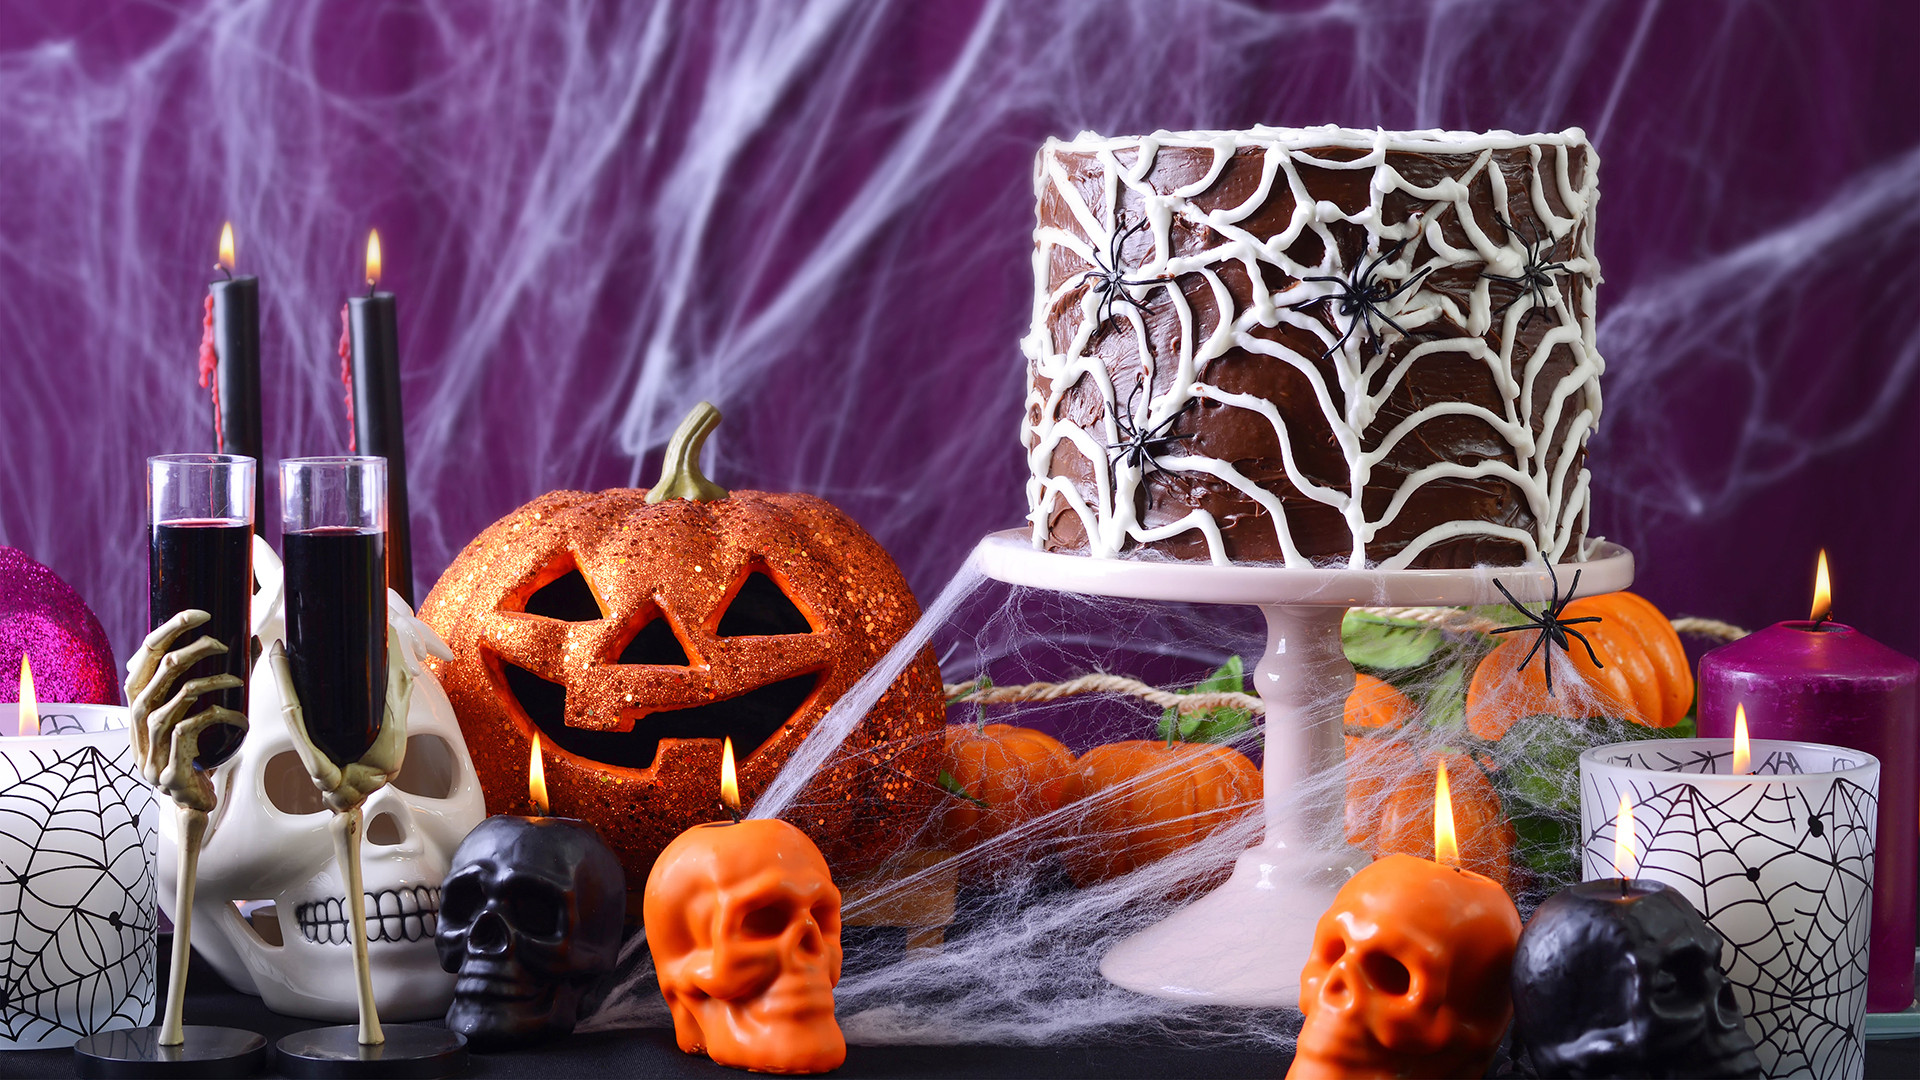 Diy Halloween Party Ideas Decorations
 Easy DIY decorations for your Halloween party TODAY